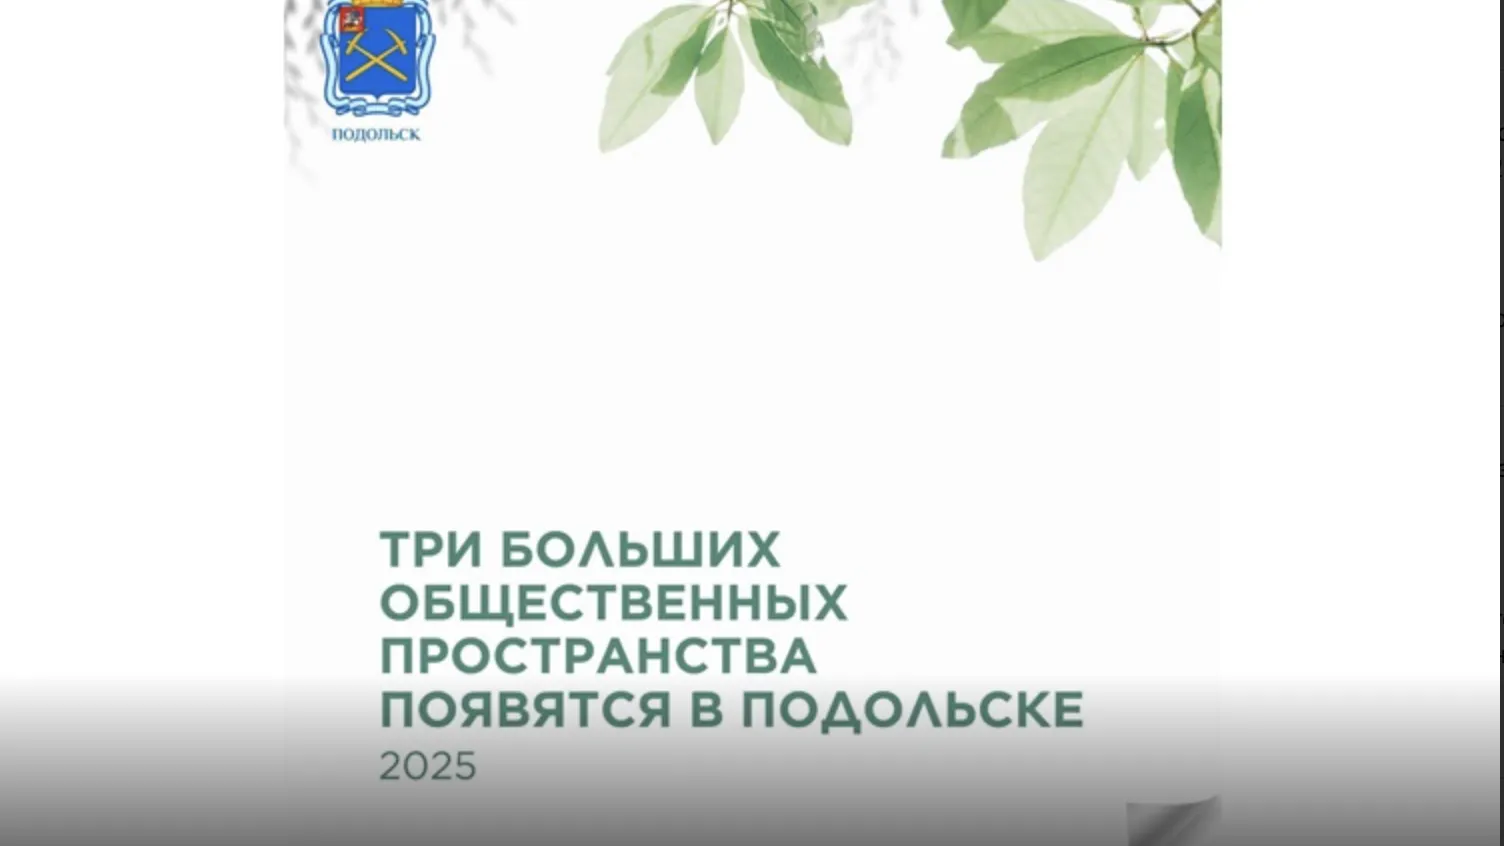 В Подольске сразу 3 больших общественных пространства появятся в 2025 году